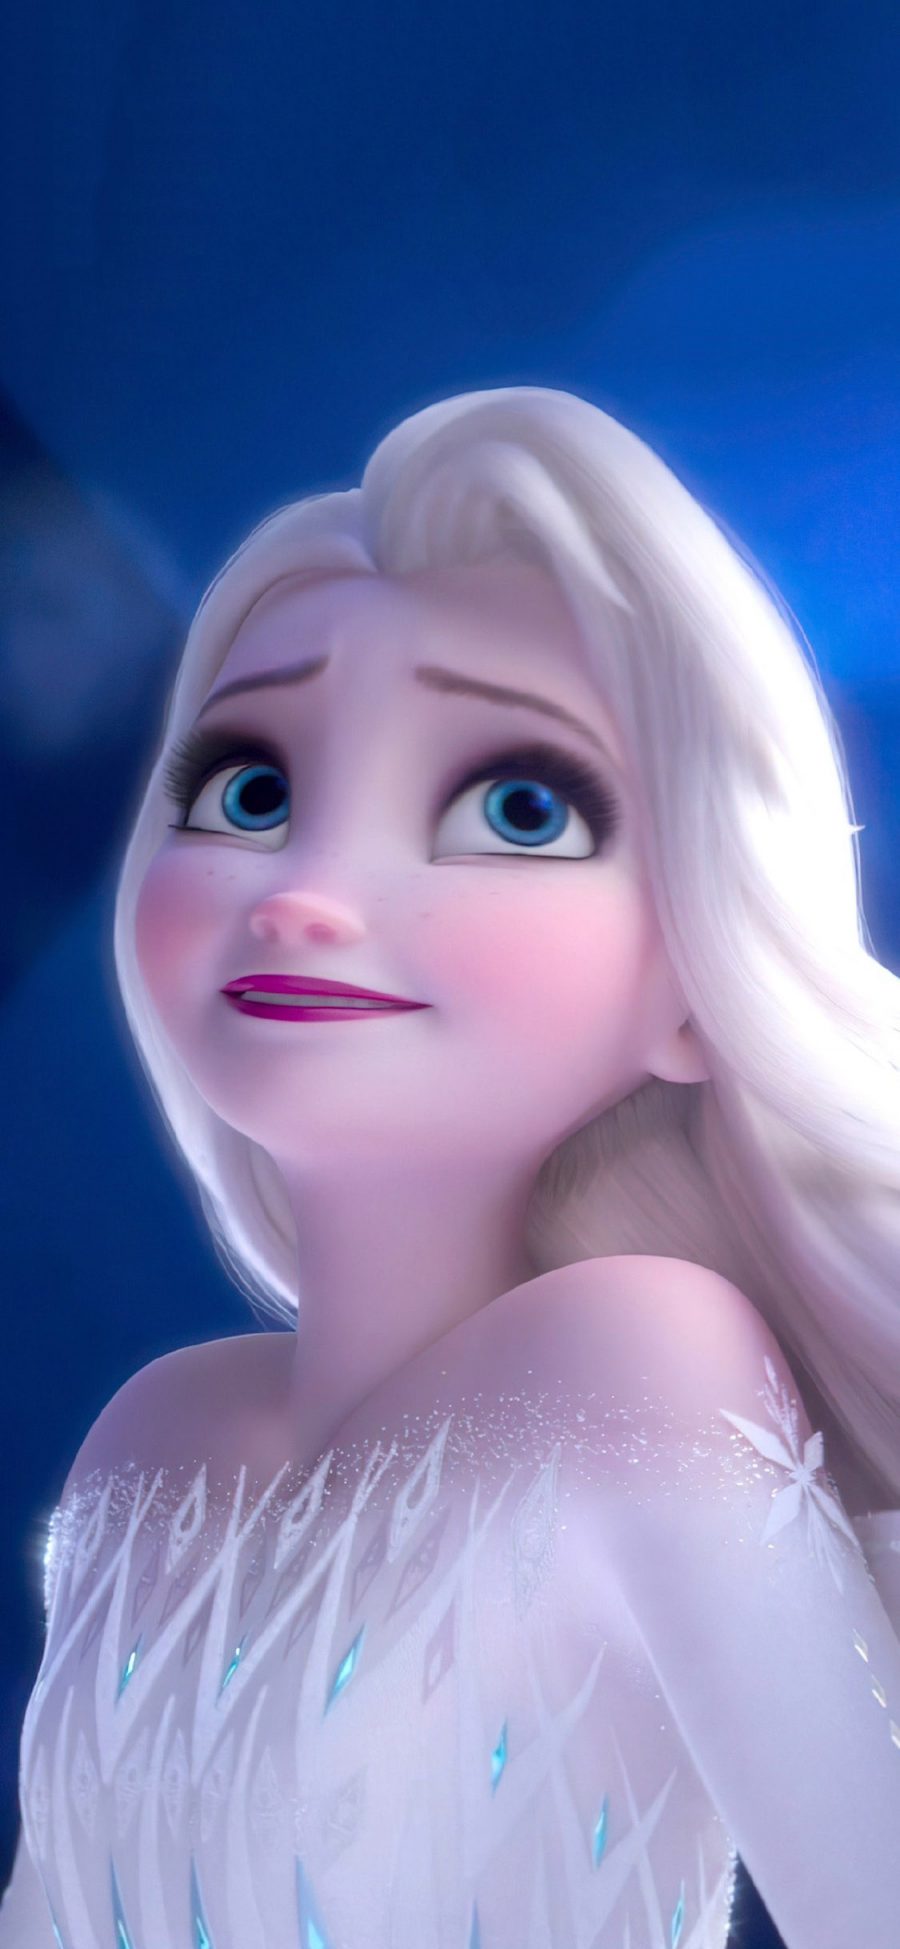 [2436×1125]迪士尼 公主 艾莎 冰雪奇缘 Elsa 苹果手机动漫壁纸图片